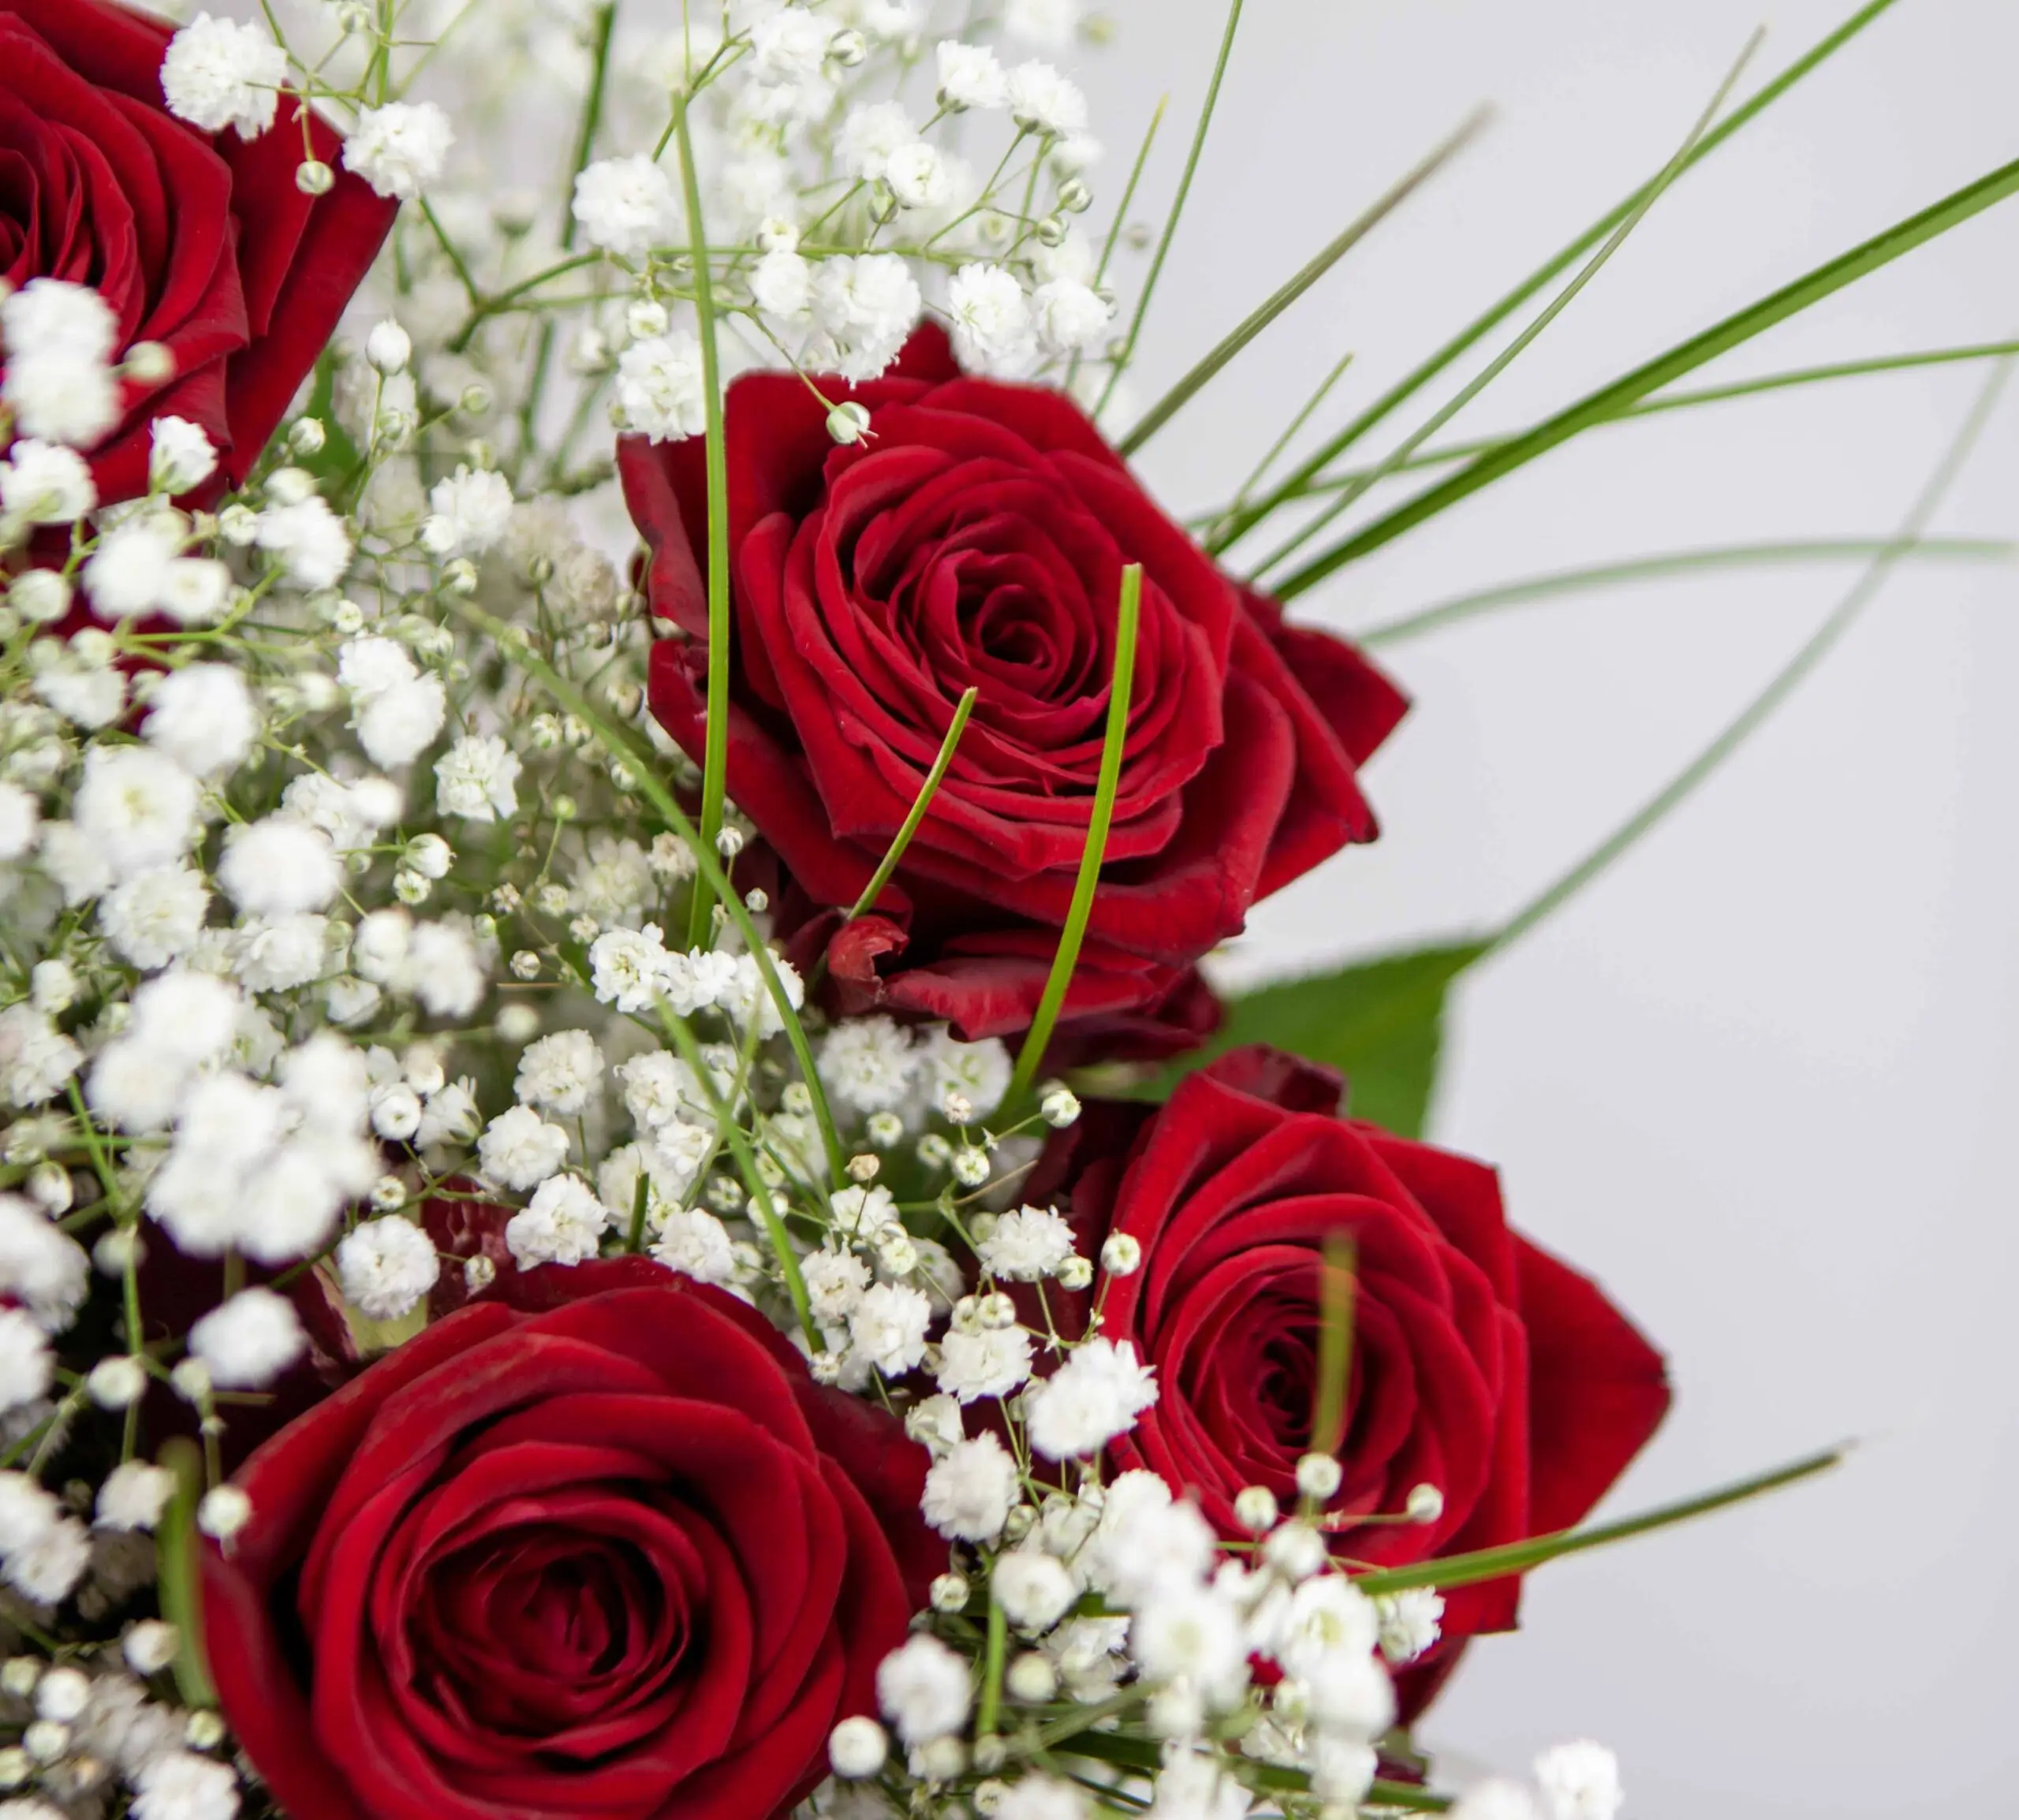 Bouquet gourmand - livraison de fleurs à domicile